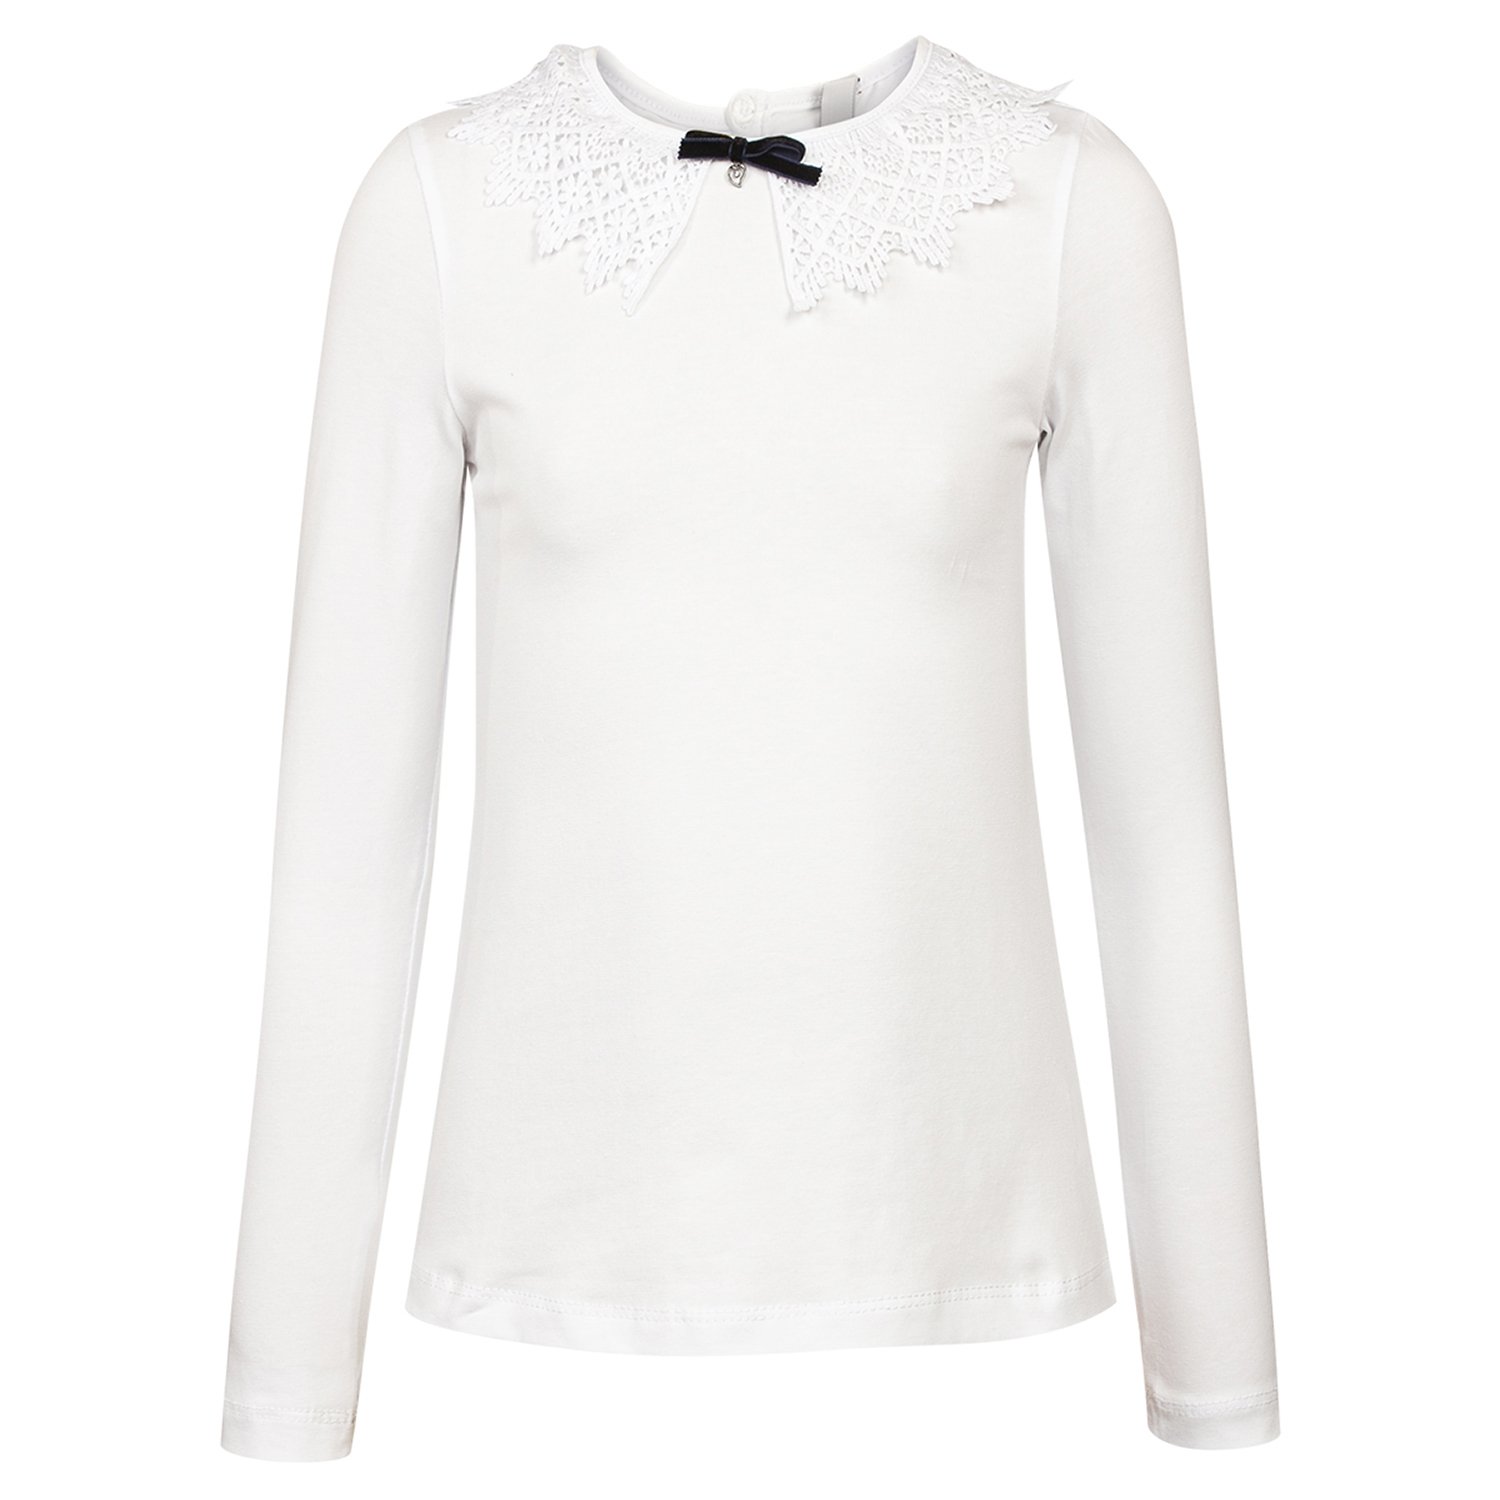 Блузка Nota Bene белая - купить в интернет магазине ...